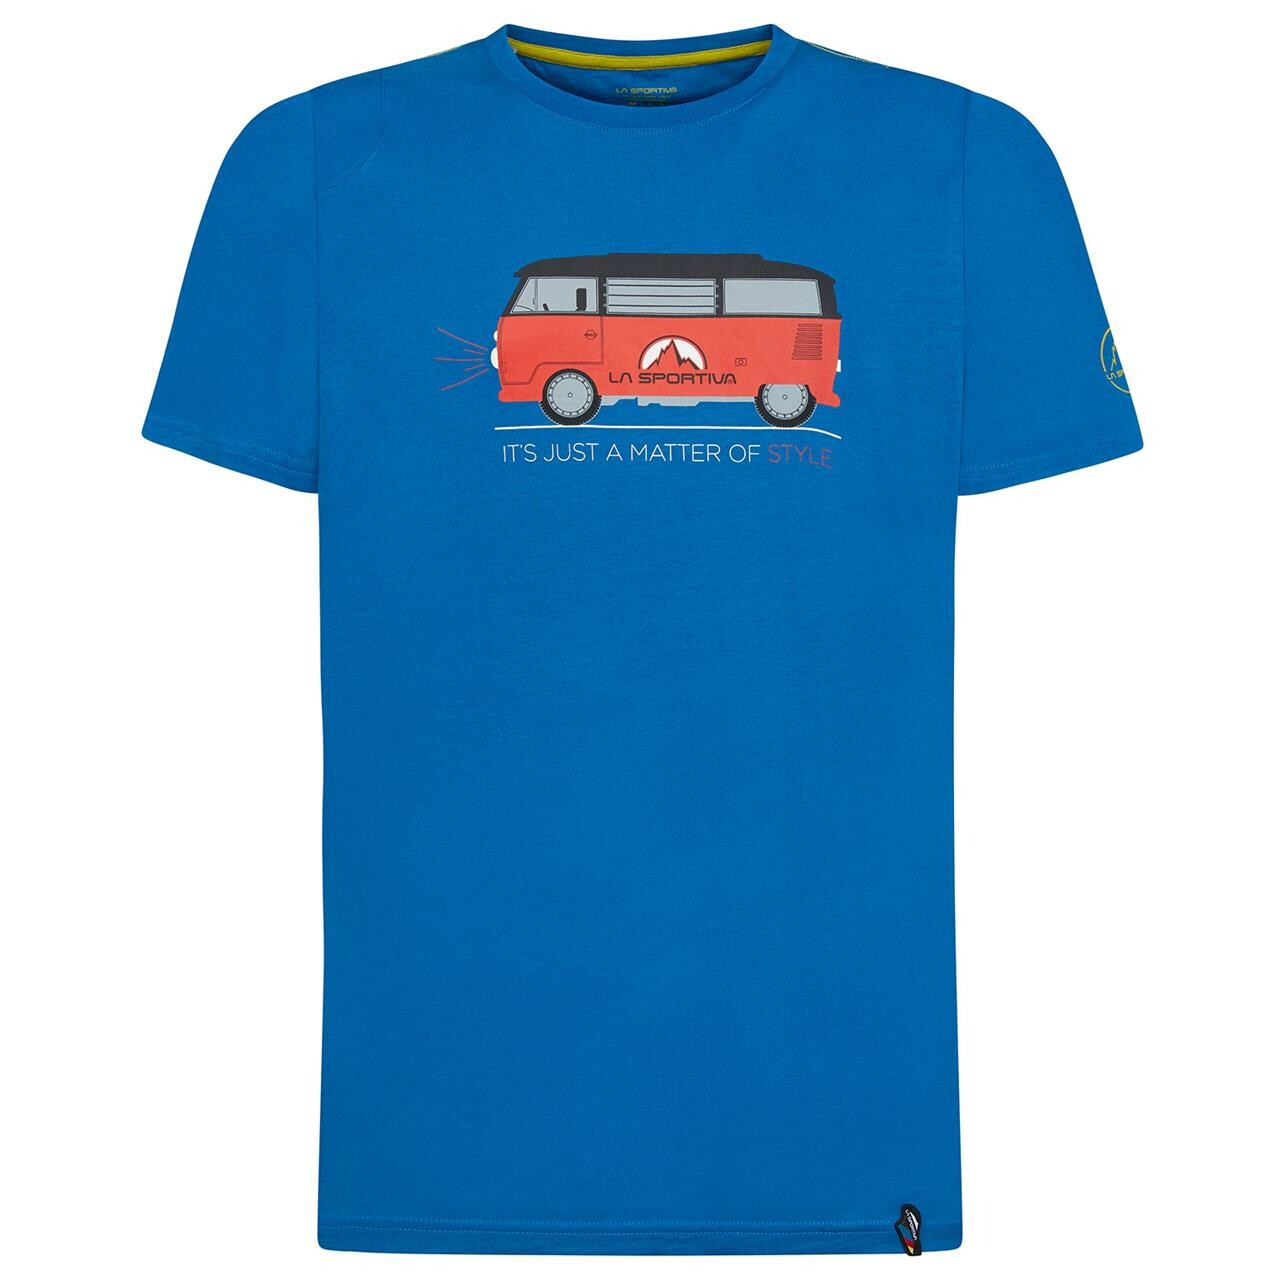 Billede af La Sportiva Mens Van T-shirt (Blå (NEPTUNE) X-large)